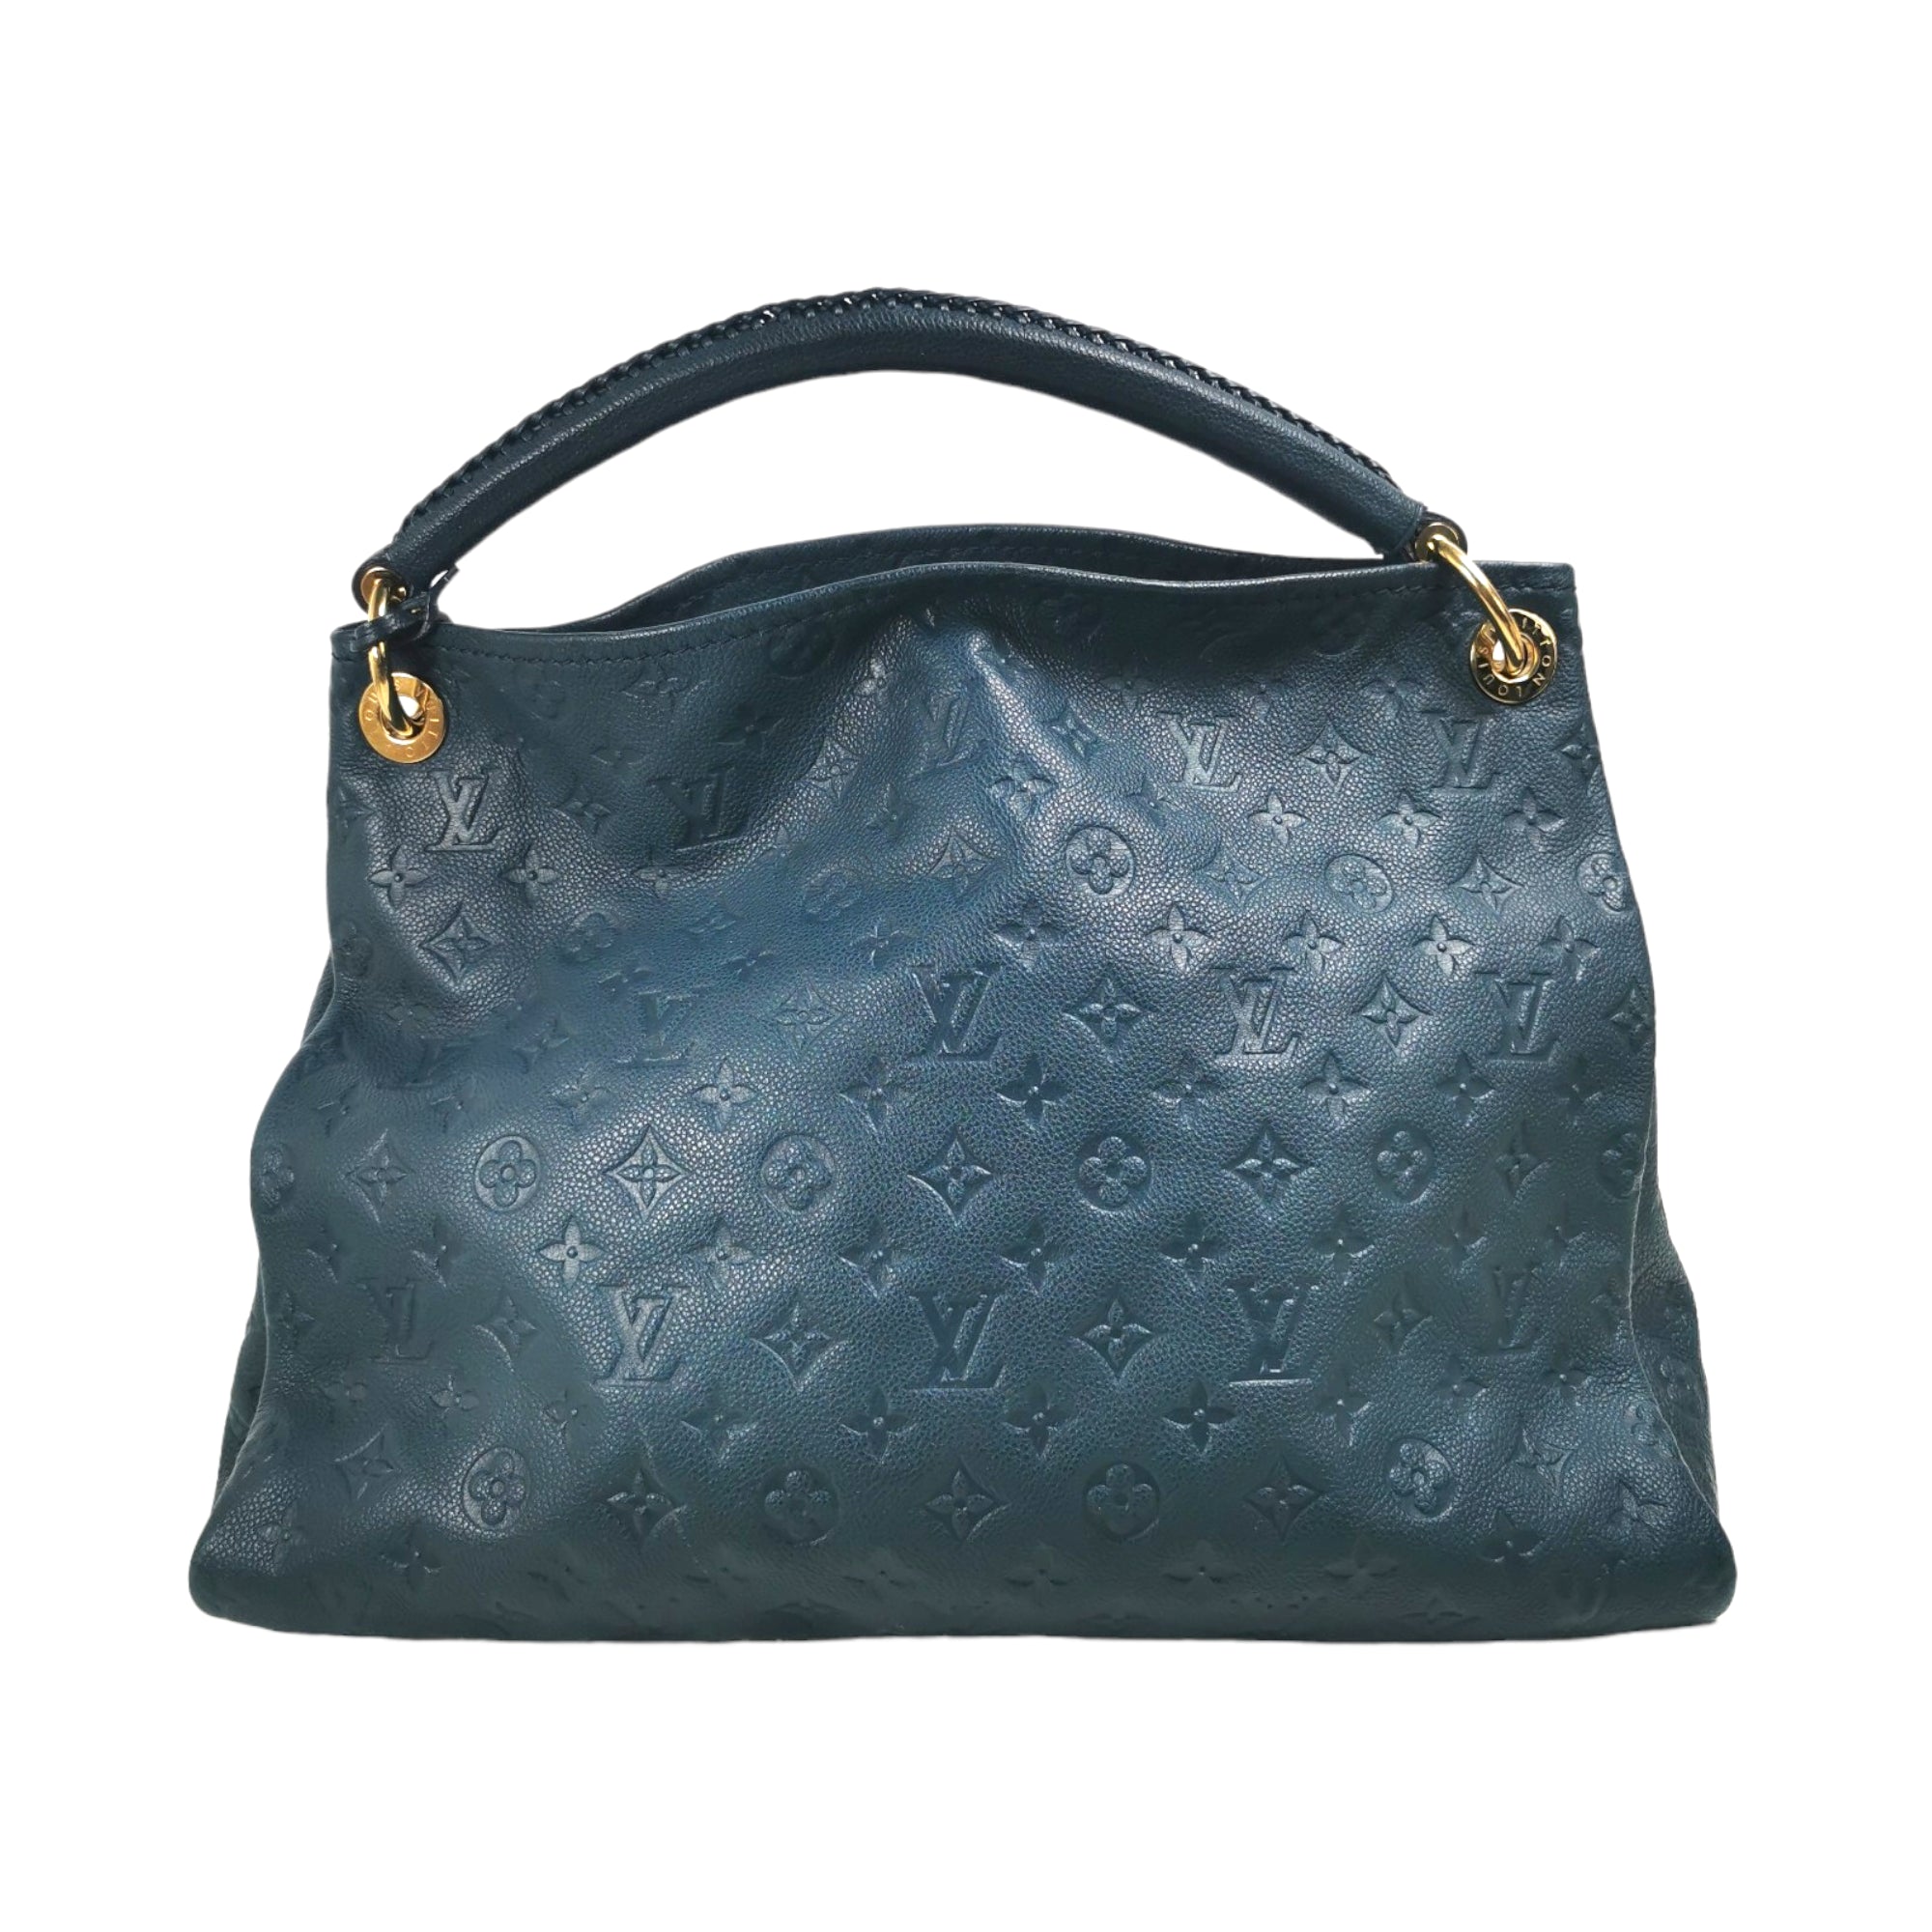 Louis Vuitton Neo Alma BB empreinte - Good or Bag